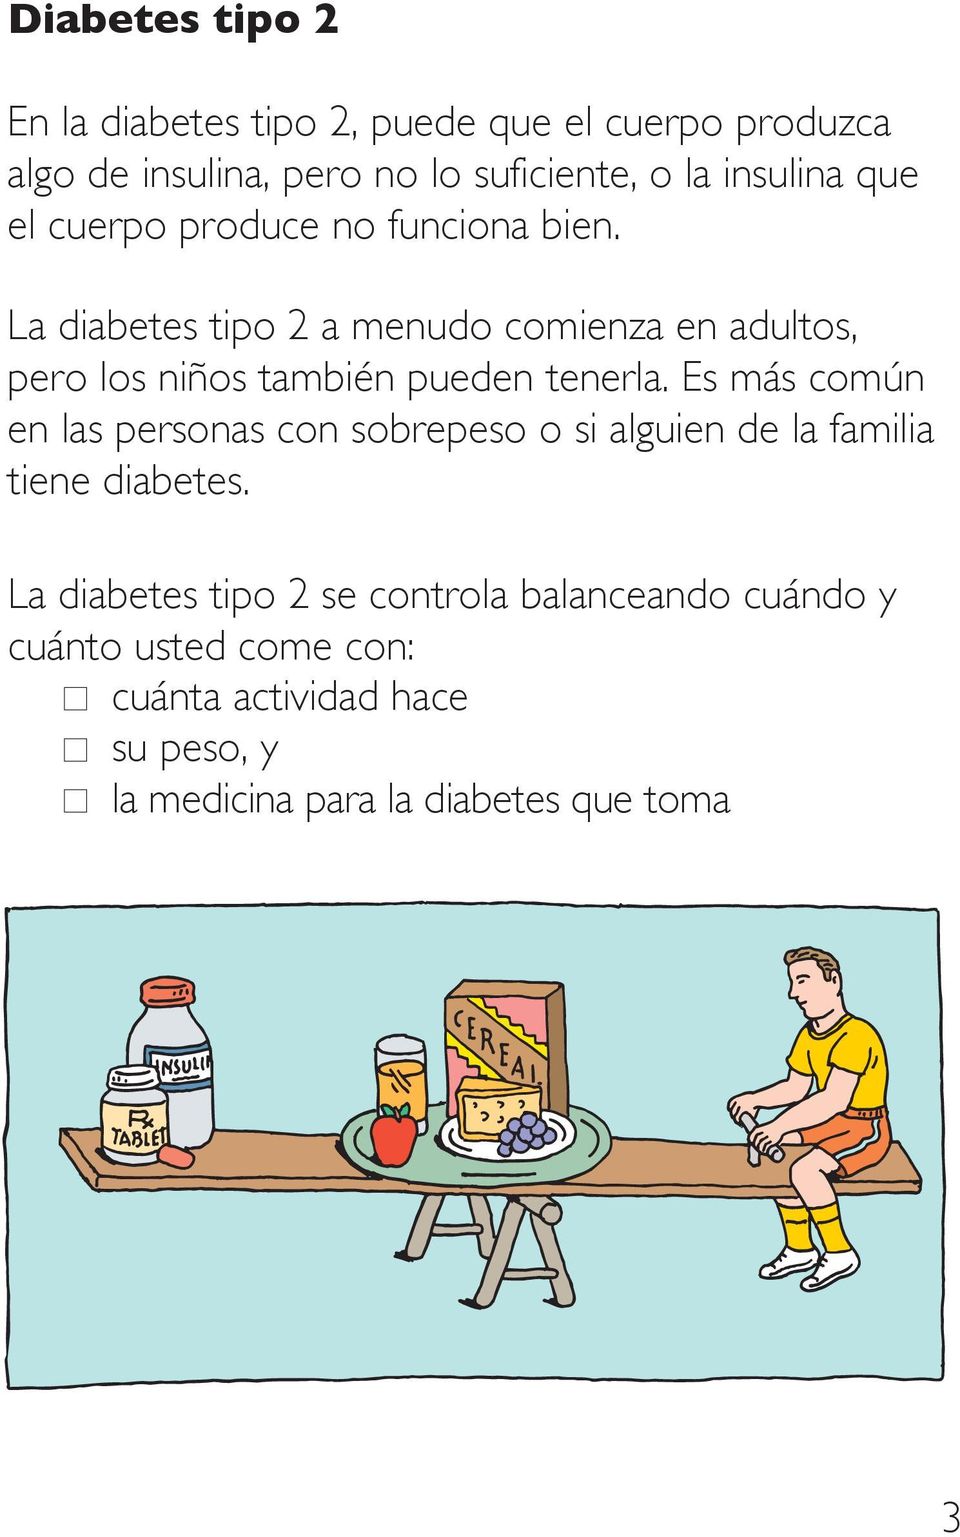 La diabetes tipo 2 a menudo comienza en adultos, pero los niños también pueden tenerla.